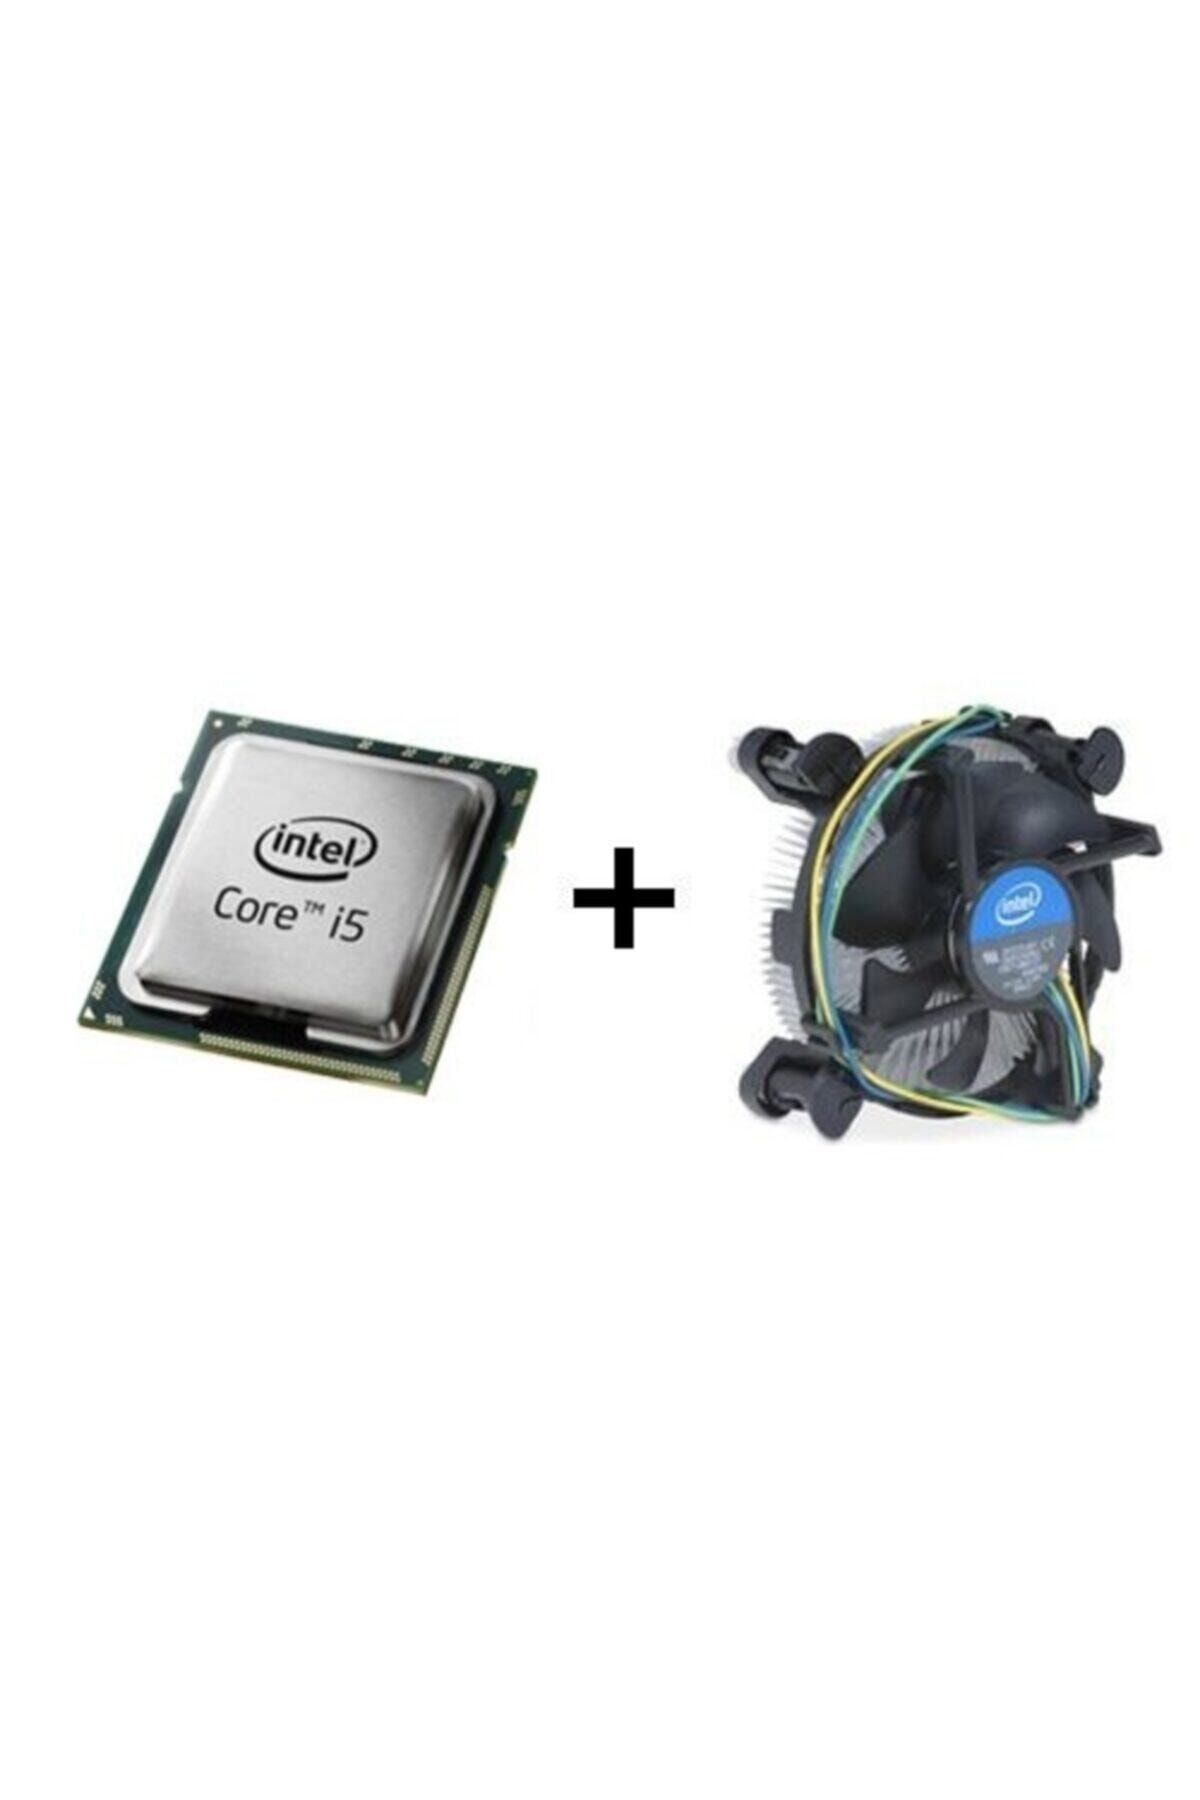 Intel I5 2400 3.1ghz Tray+fan 1155 Pın 6mb 95w